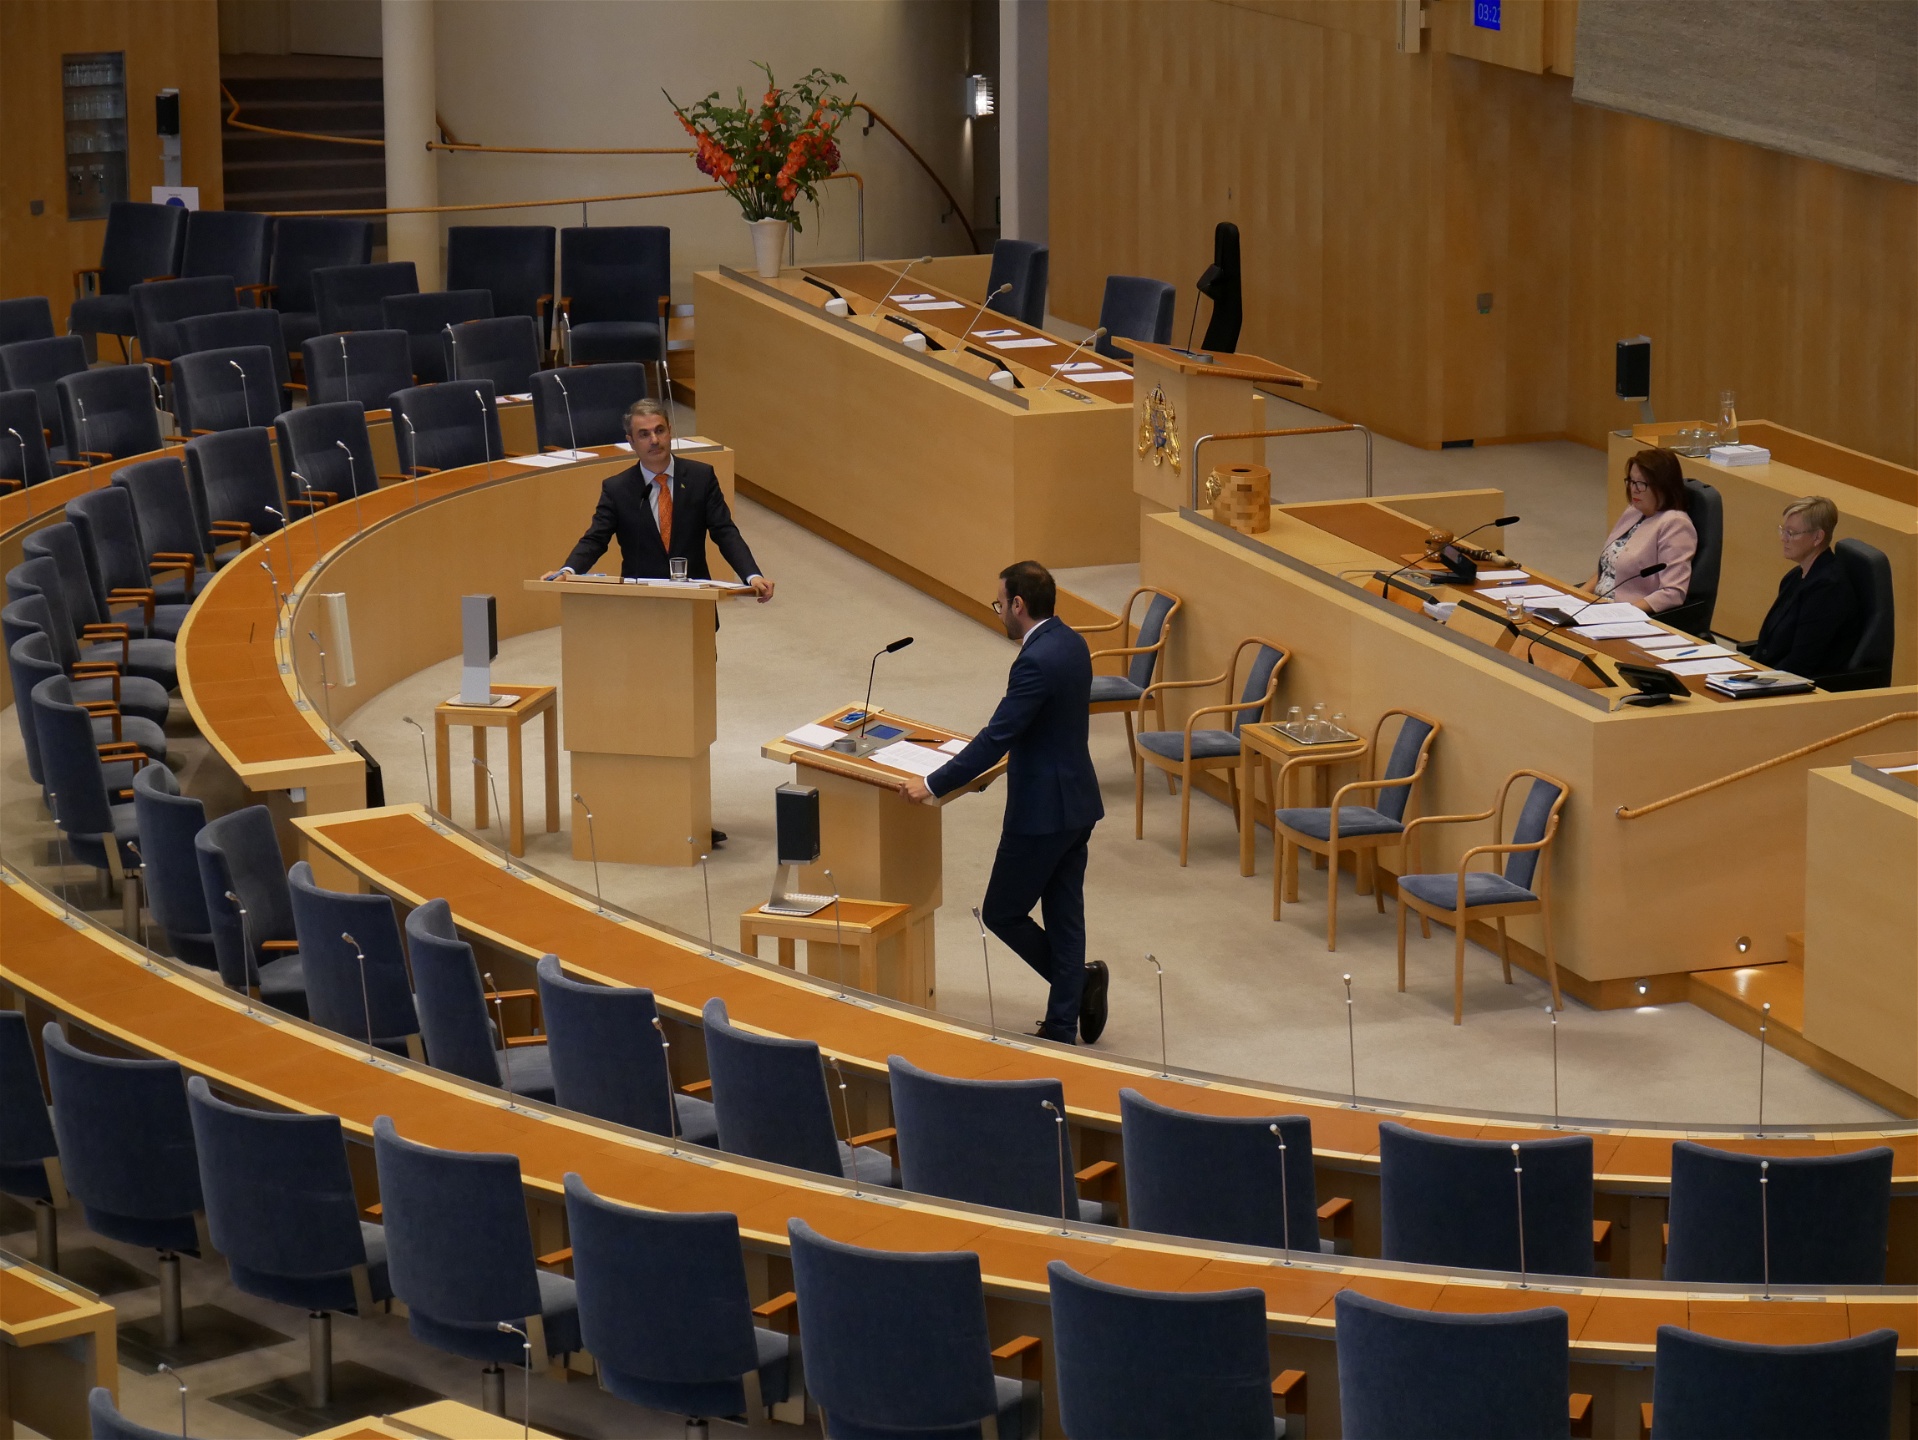 Foto: Julia LindblomInterpellation i riksdagen i september gällande techjättarnas skatteflykt. Riksdagsledamoten Tony Haddou från Vänsterpartiet debatterar med näringsministern Ibrahim Baylan.